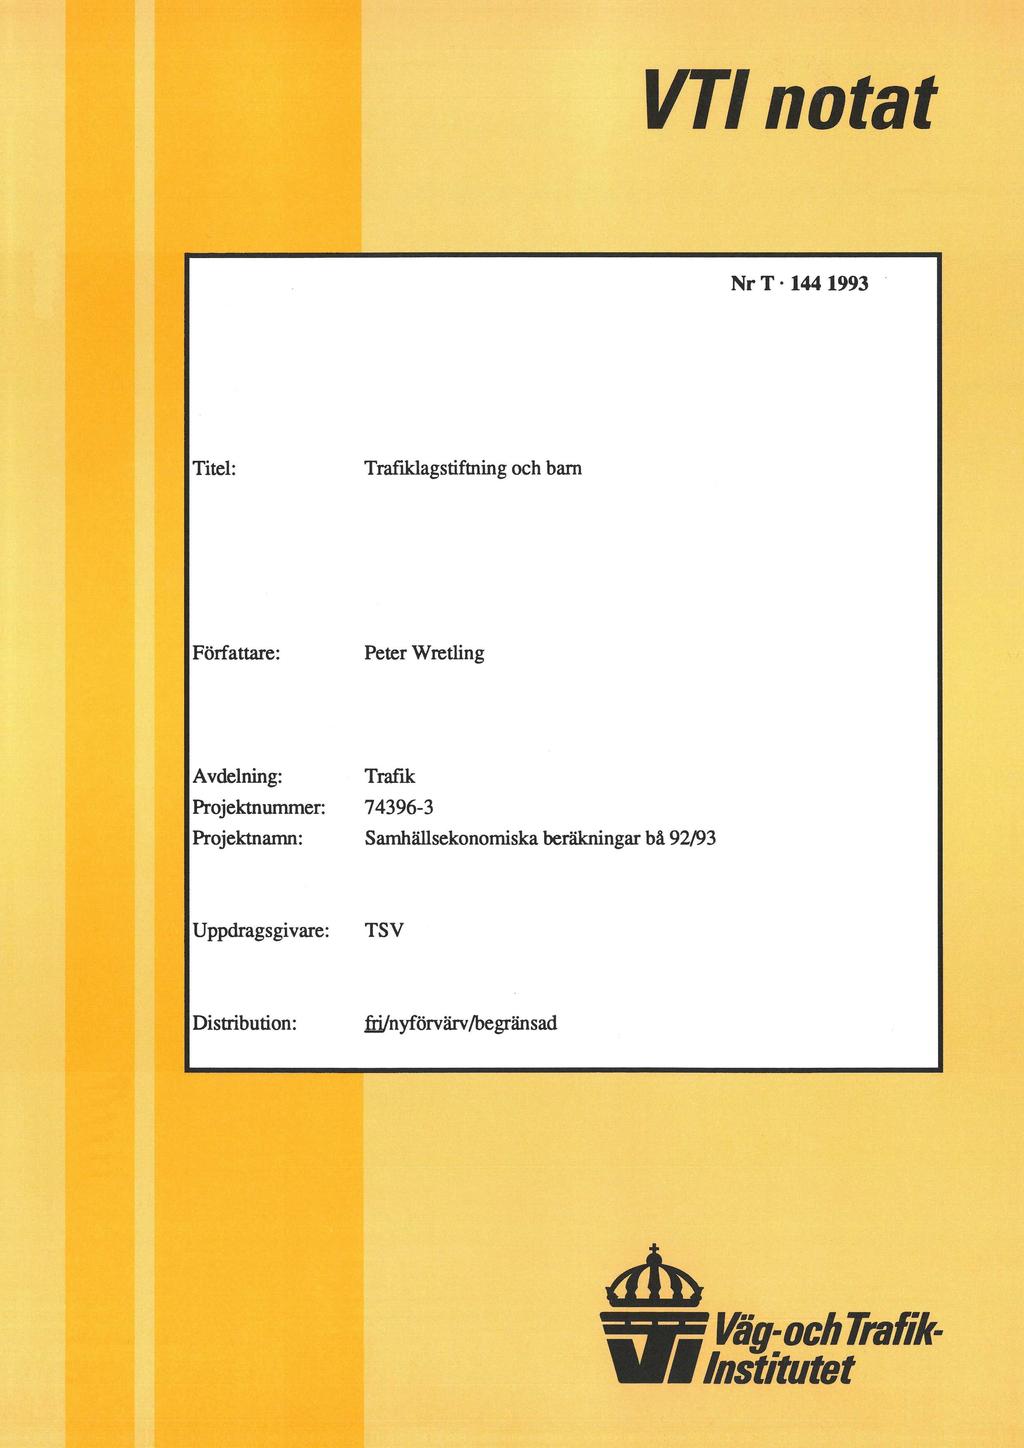 VTI natat Nr T - 144 1993 ' Titel: Trañklagstiftning och barn Författare: Peter Wretling Avdelning: Projektnummer: Projektnamn: Trafik